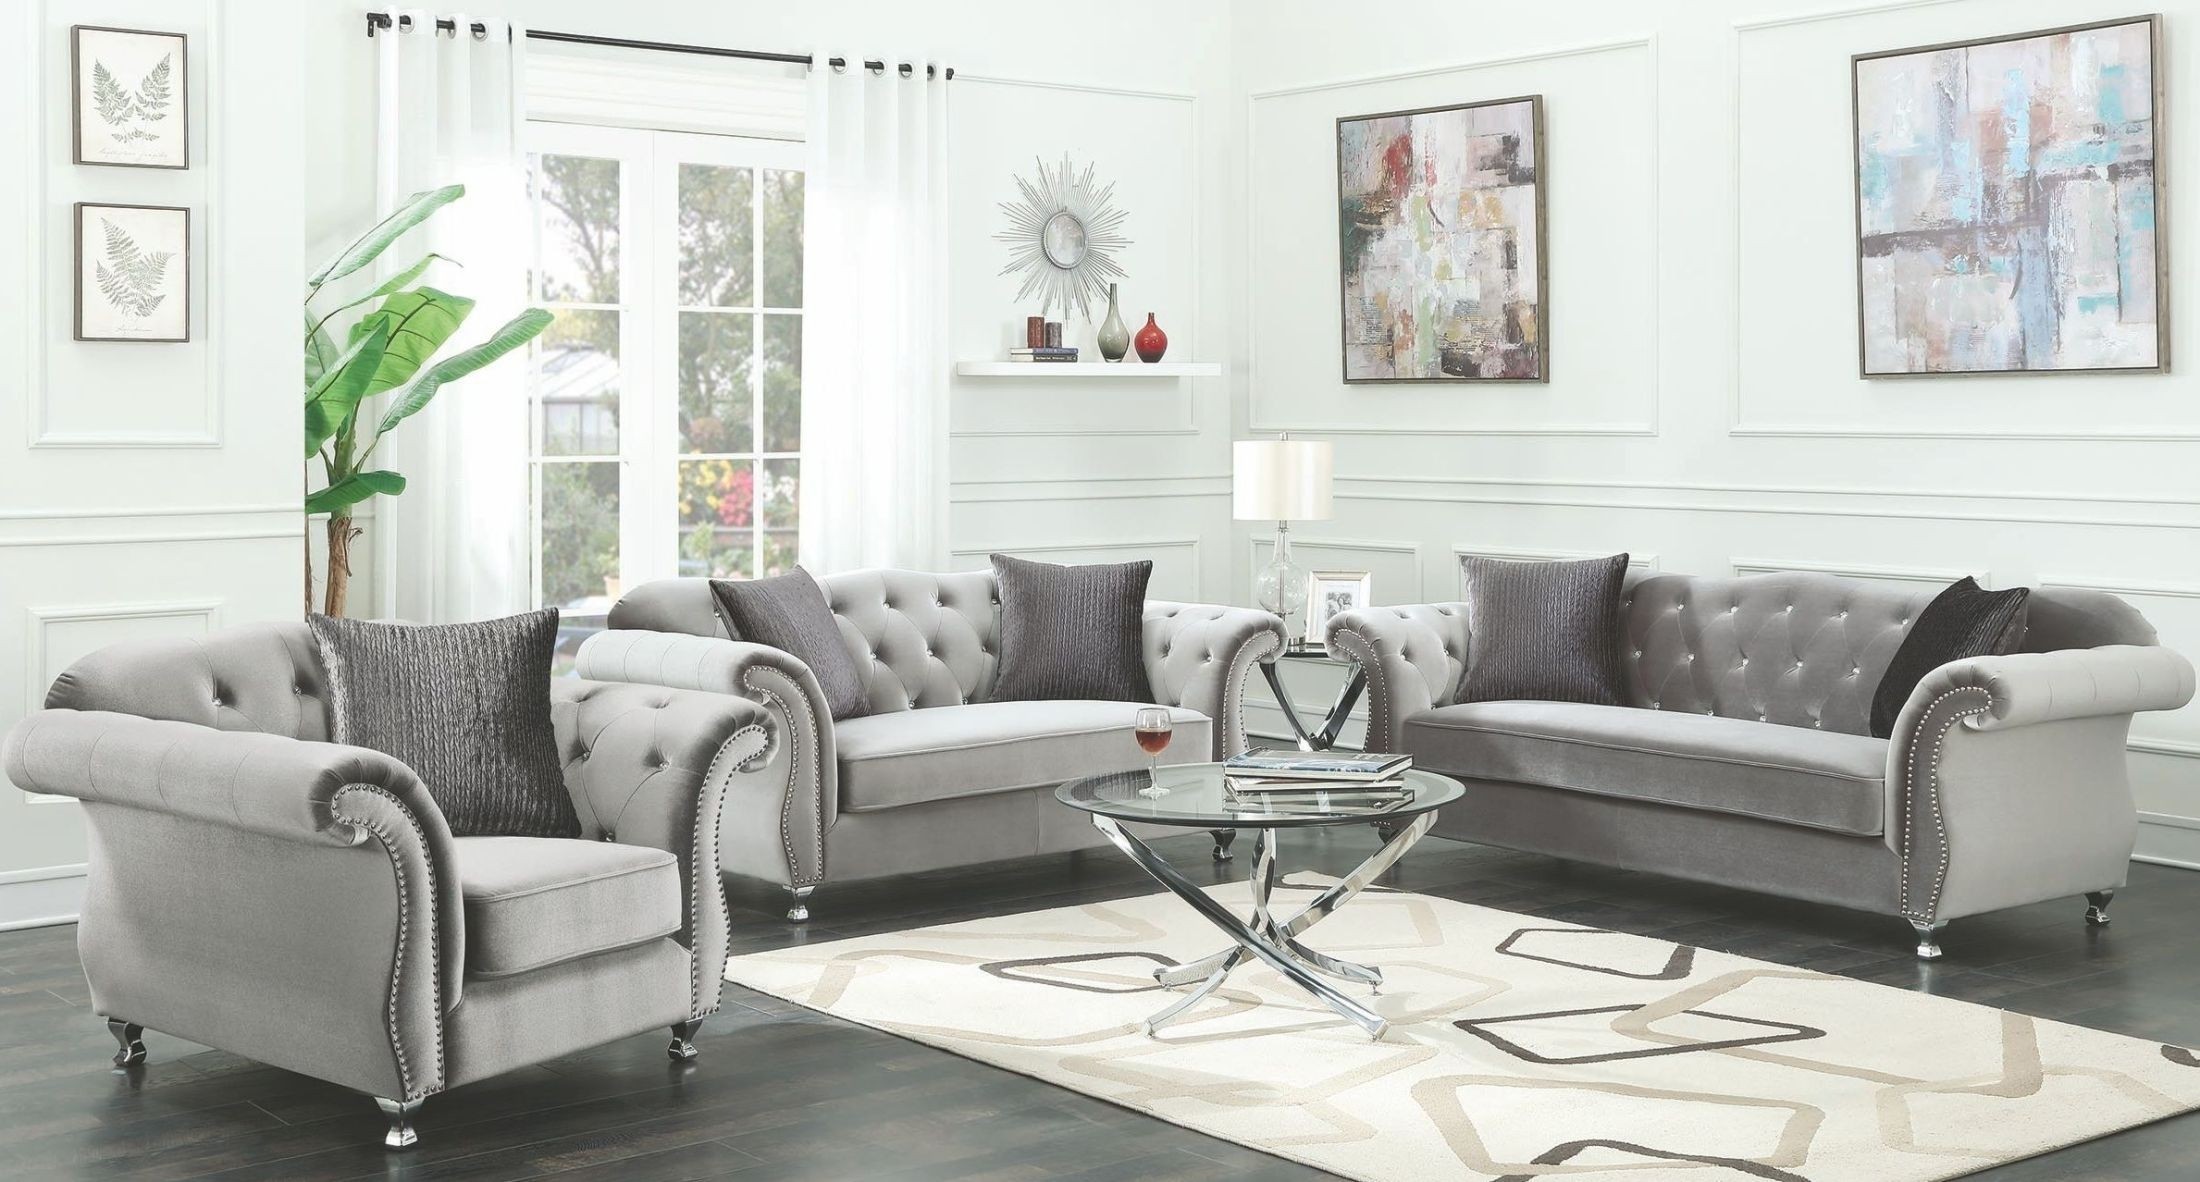 Frostine silver living room set 551161 coaster furniture